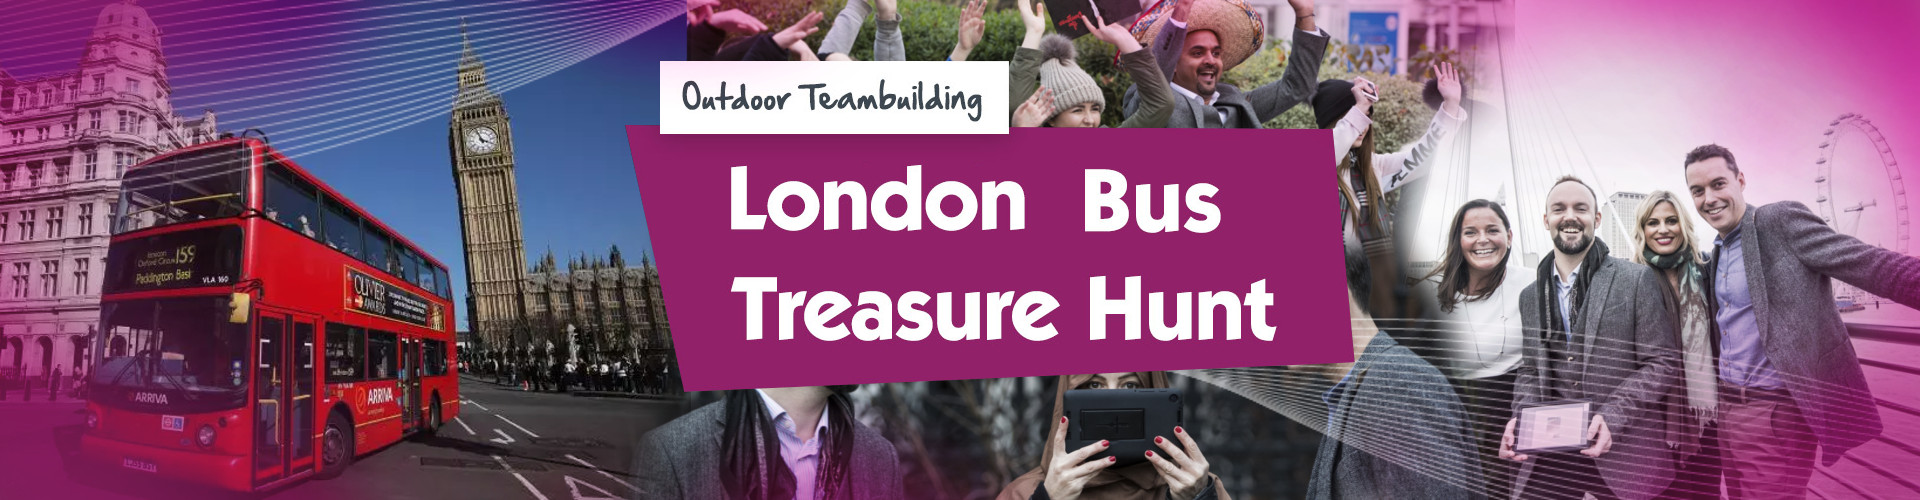 London Bus Treasure Hunt - Banner